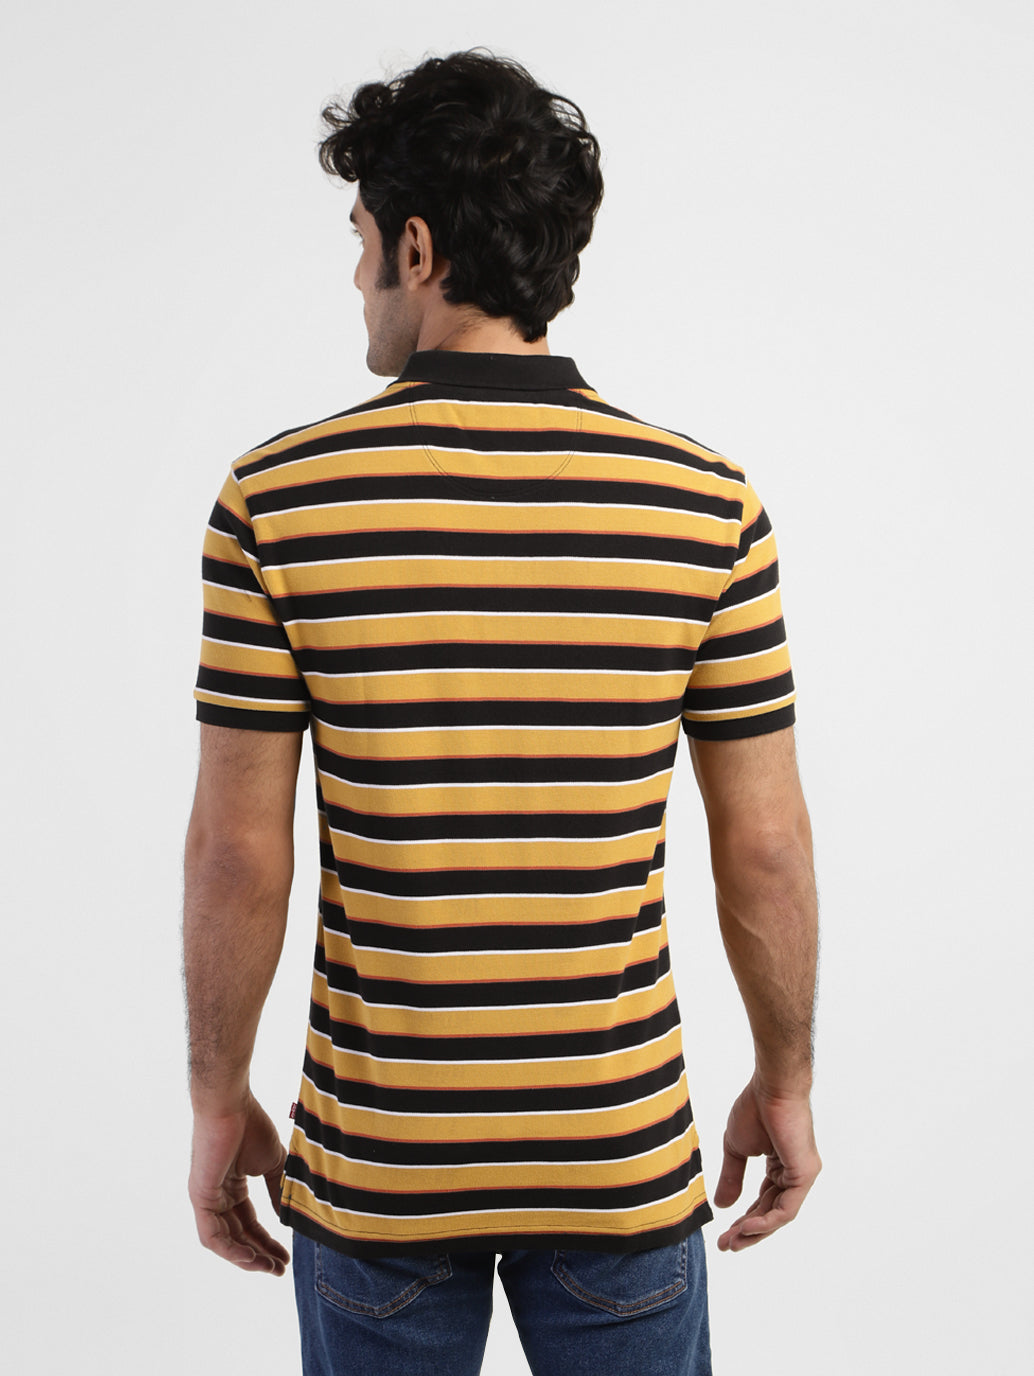 Men's Striped Polo T-shirt